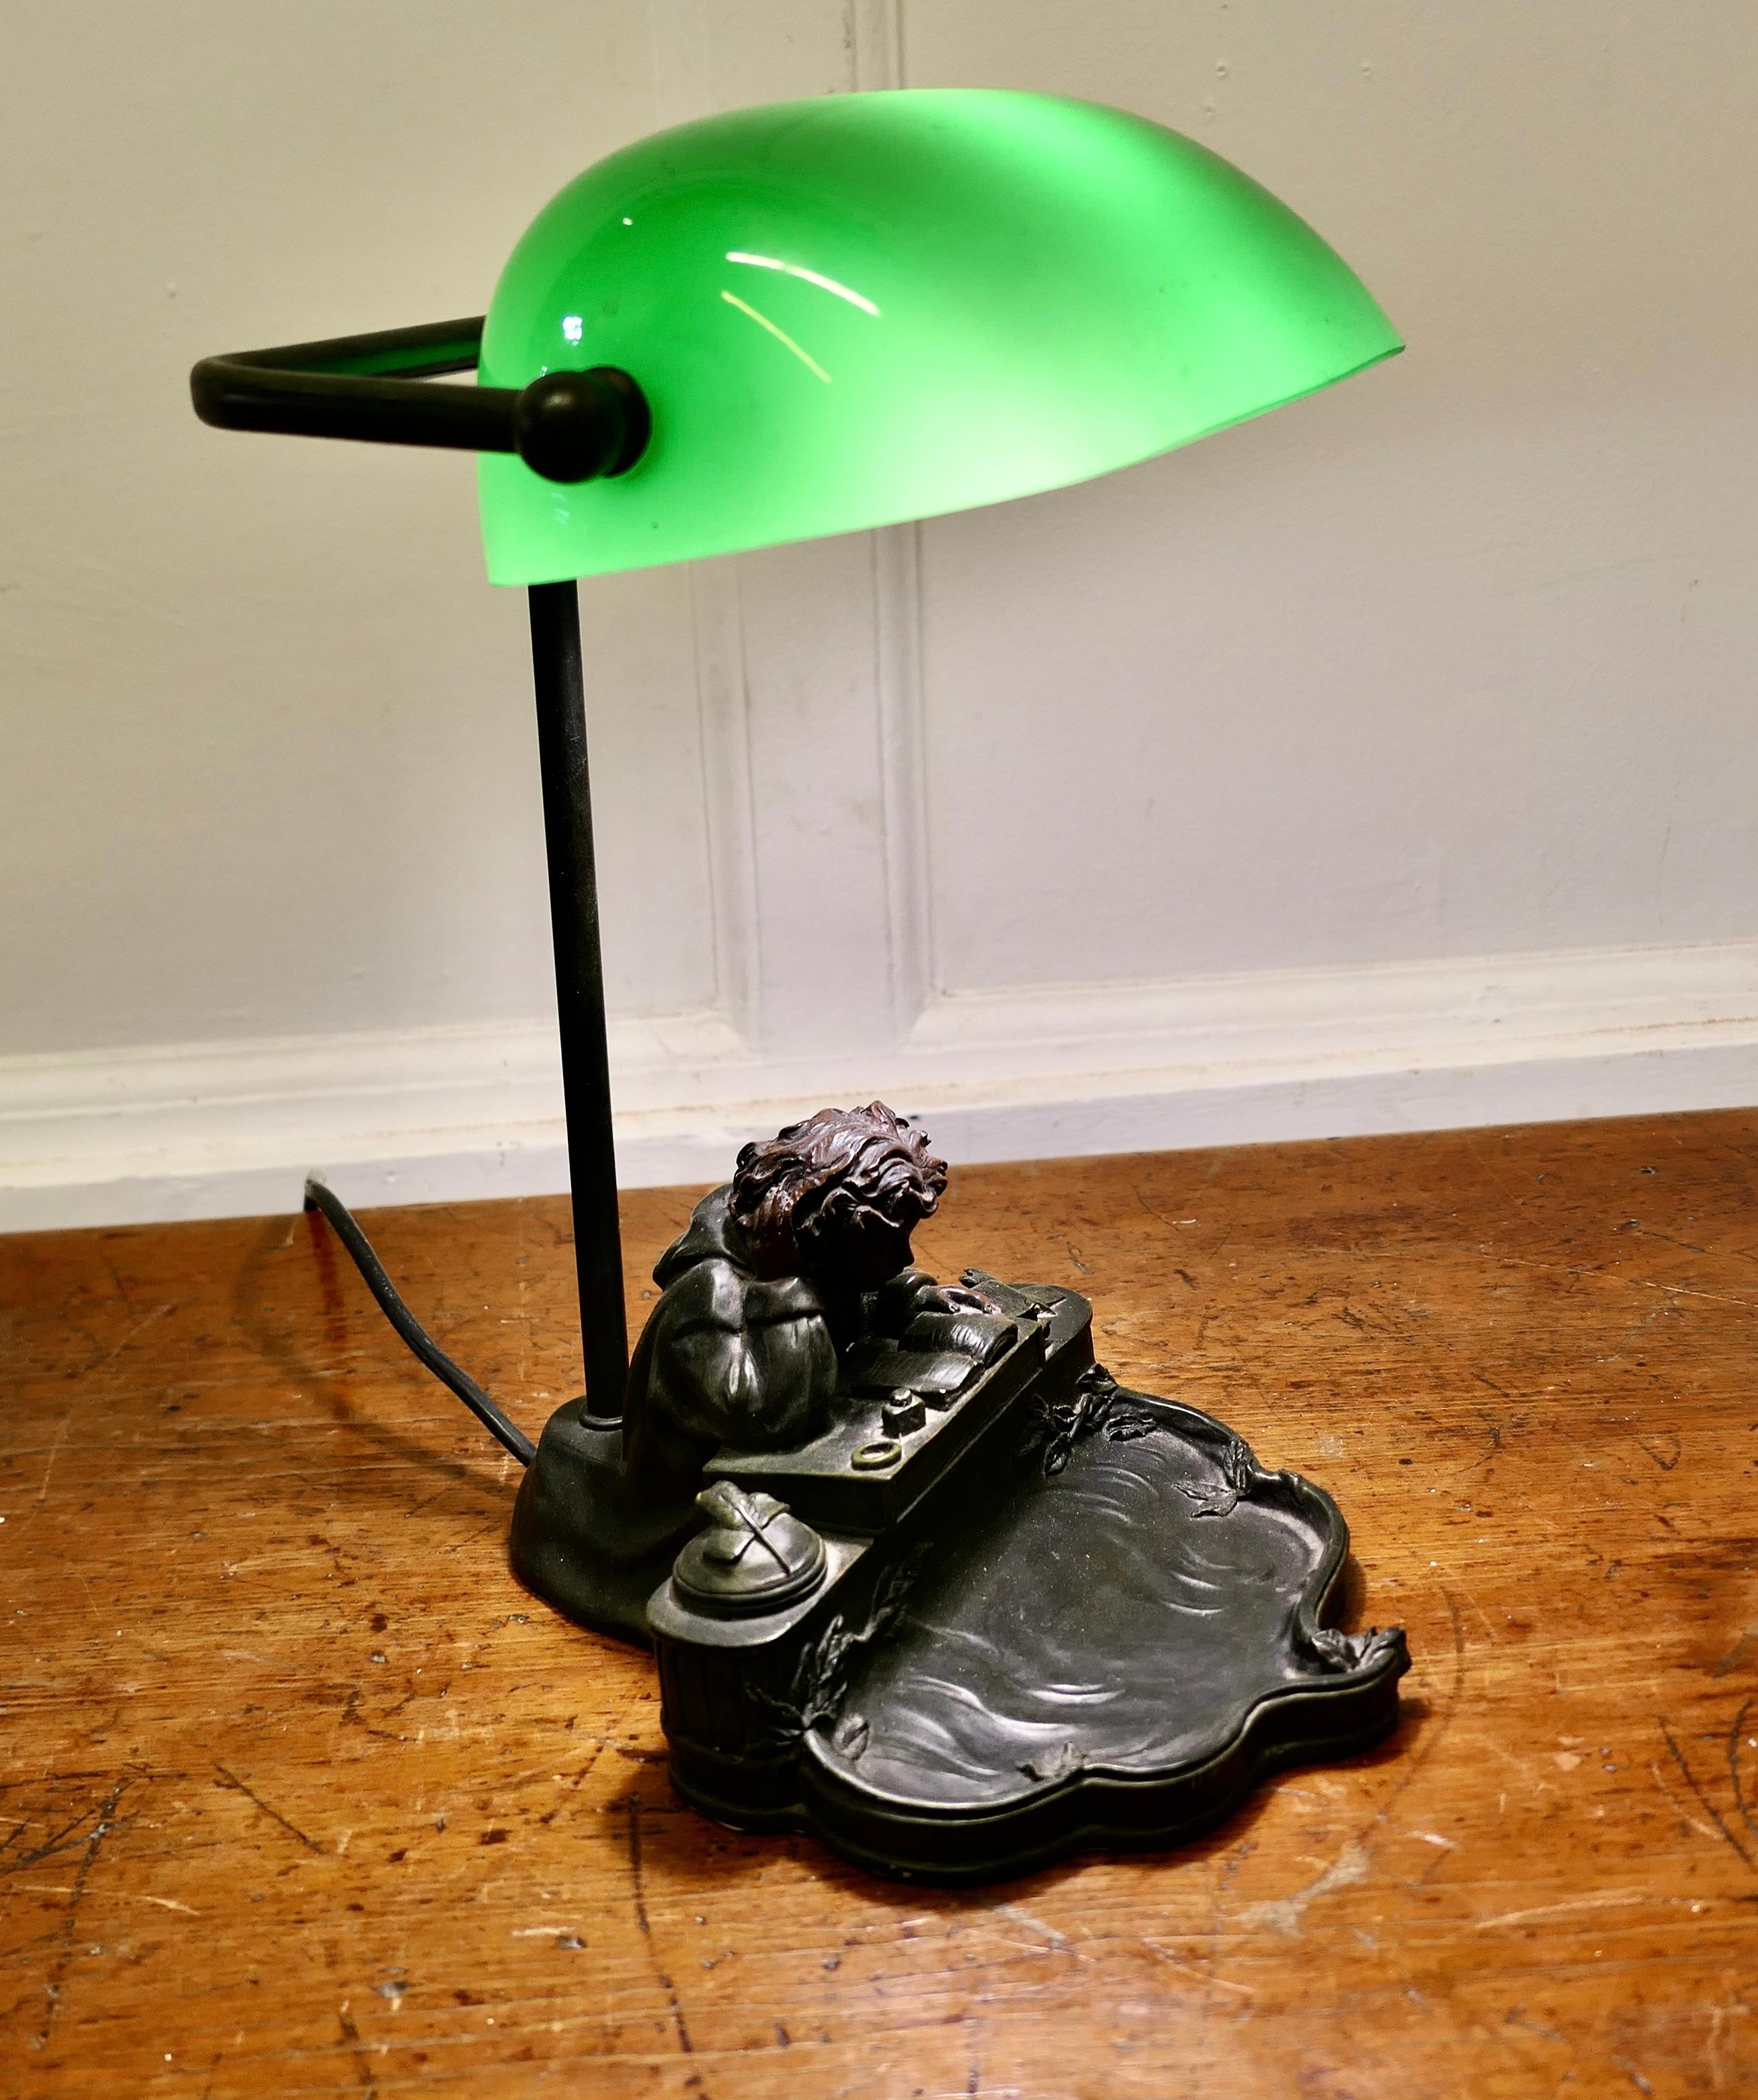 Banker's Desk Lamp aus grünem Glas  

Eine schöne und selten gesehen schwere Qualität voll einstellbare Vintage Schreibtischlampe, die Basis ist eine Bronze-Finish und zeigt einen jungen Mann studiert an seinem Schreibtisch mit Stiften, Tintenfass